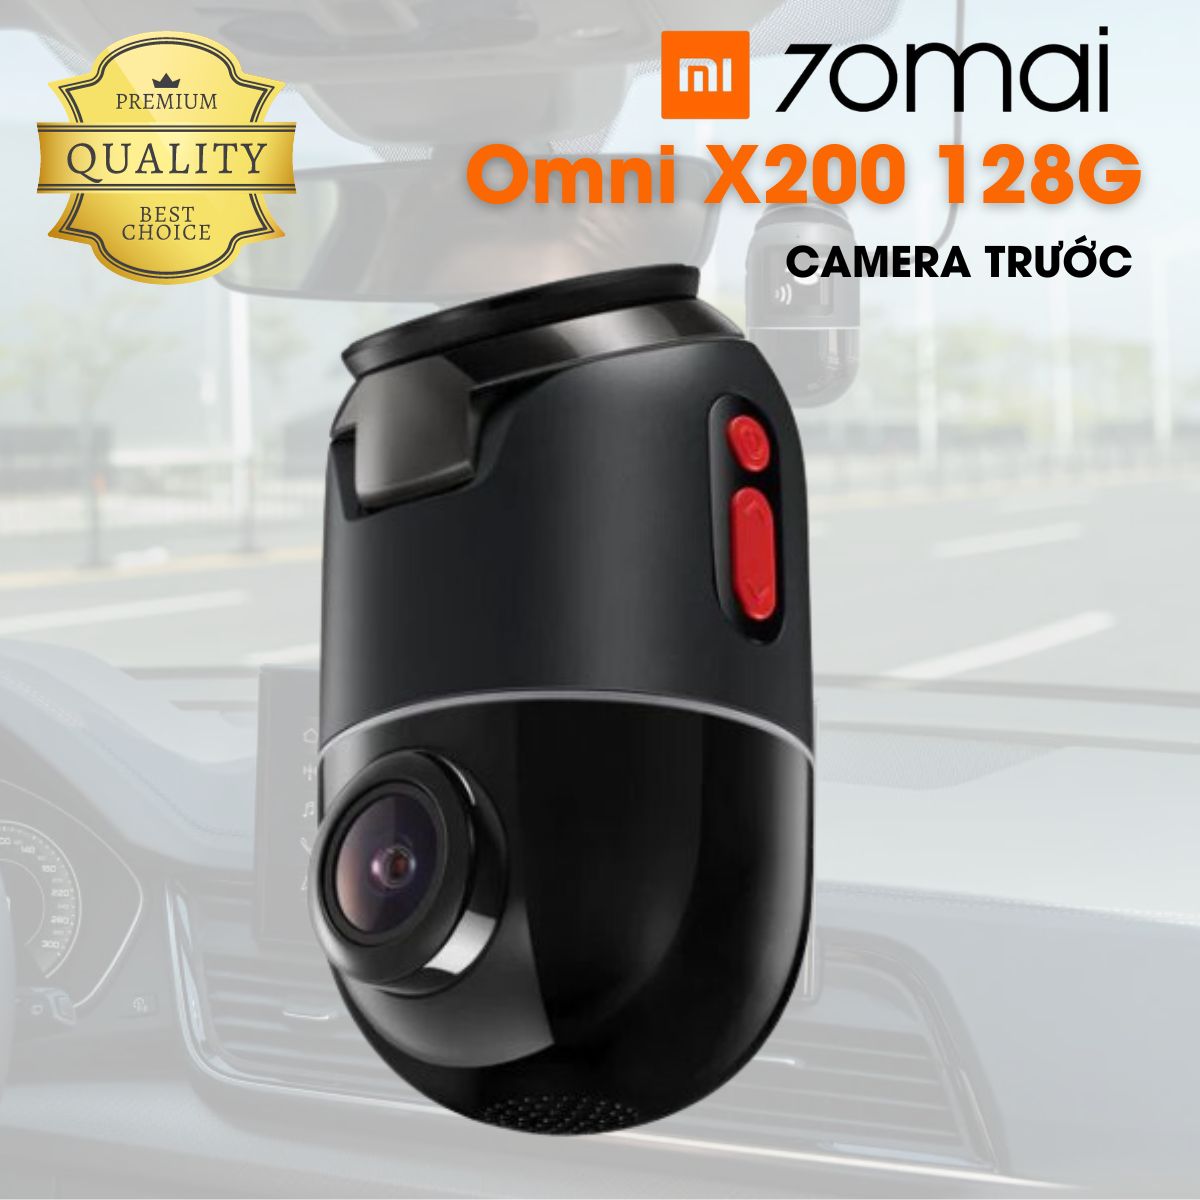 Camera giám sát hành trình Full HD 70mai Omni X200 128G (bản trước) 360 độ, định vị GPS, wifi, giám sát bãi đỗ xe 24h